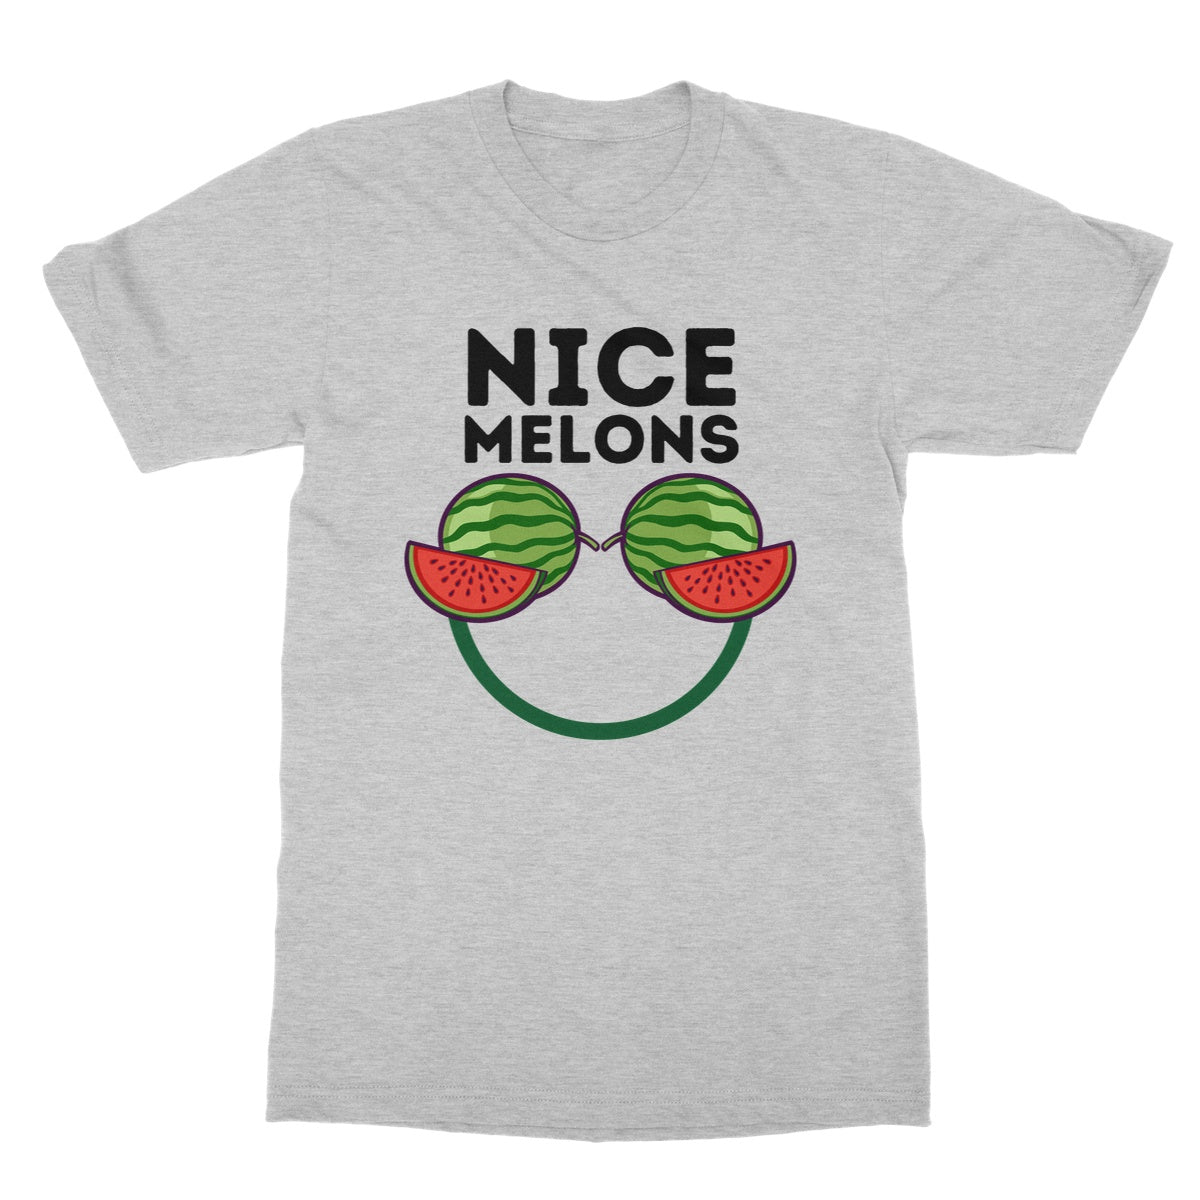 nice melons t shirt grey